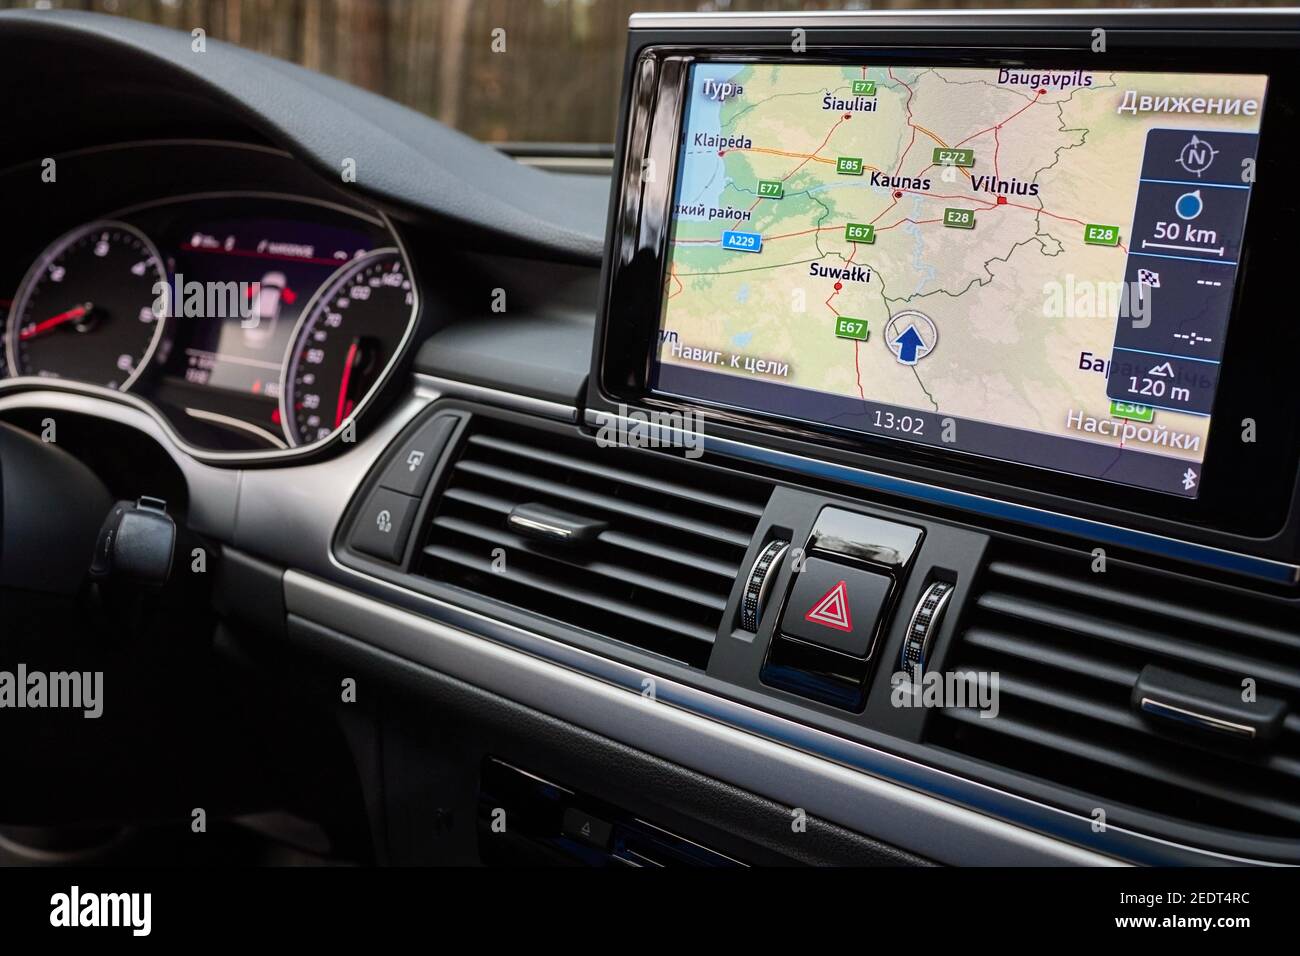 GRODNO, BÉLARUS - DÉCEMBRE 2019 : intérieur de l'Audi A6 4G C7 dans des tons sombres avec affichage avec carte de navigation GPS, panneaux de commande de climatisation du système multimédia Banque D'Images